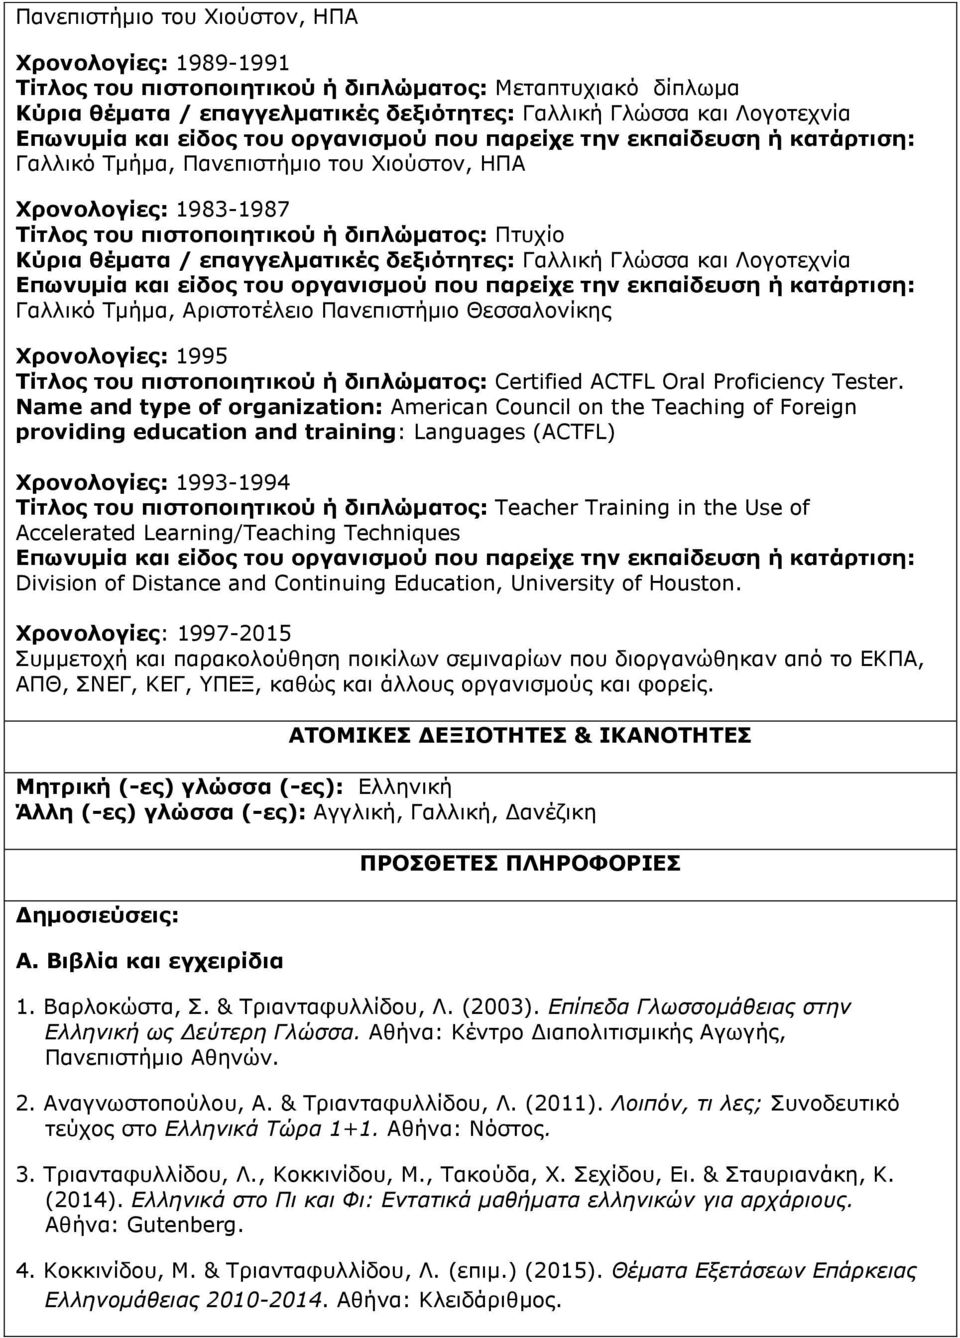 Αριστοτέλειο Πανεπιστήμιο Θεσσαλονίκης Χρονολογίες: 1995 Τίτλος του πιστοποιητικού ή διπλώματος: Certified ACTFL Oral Proficiency Tester.